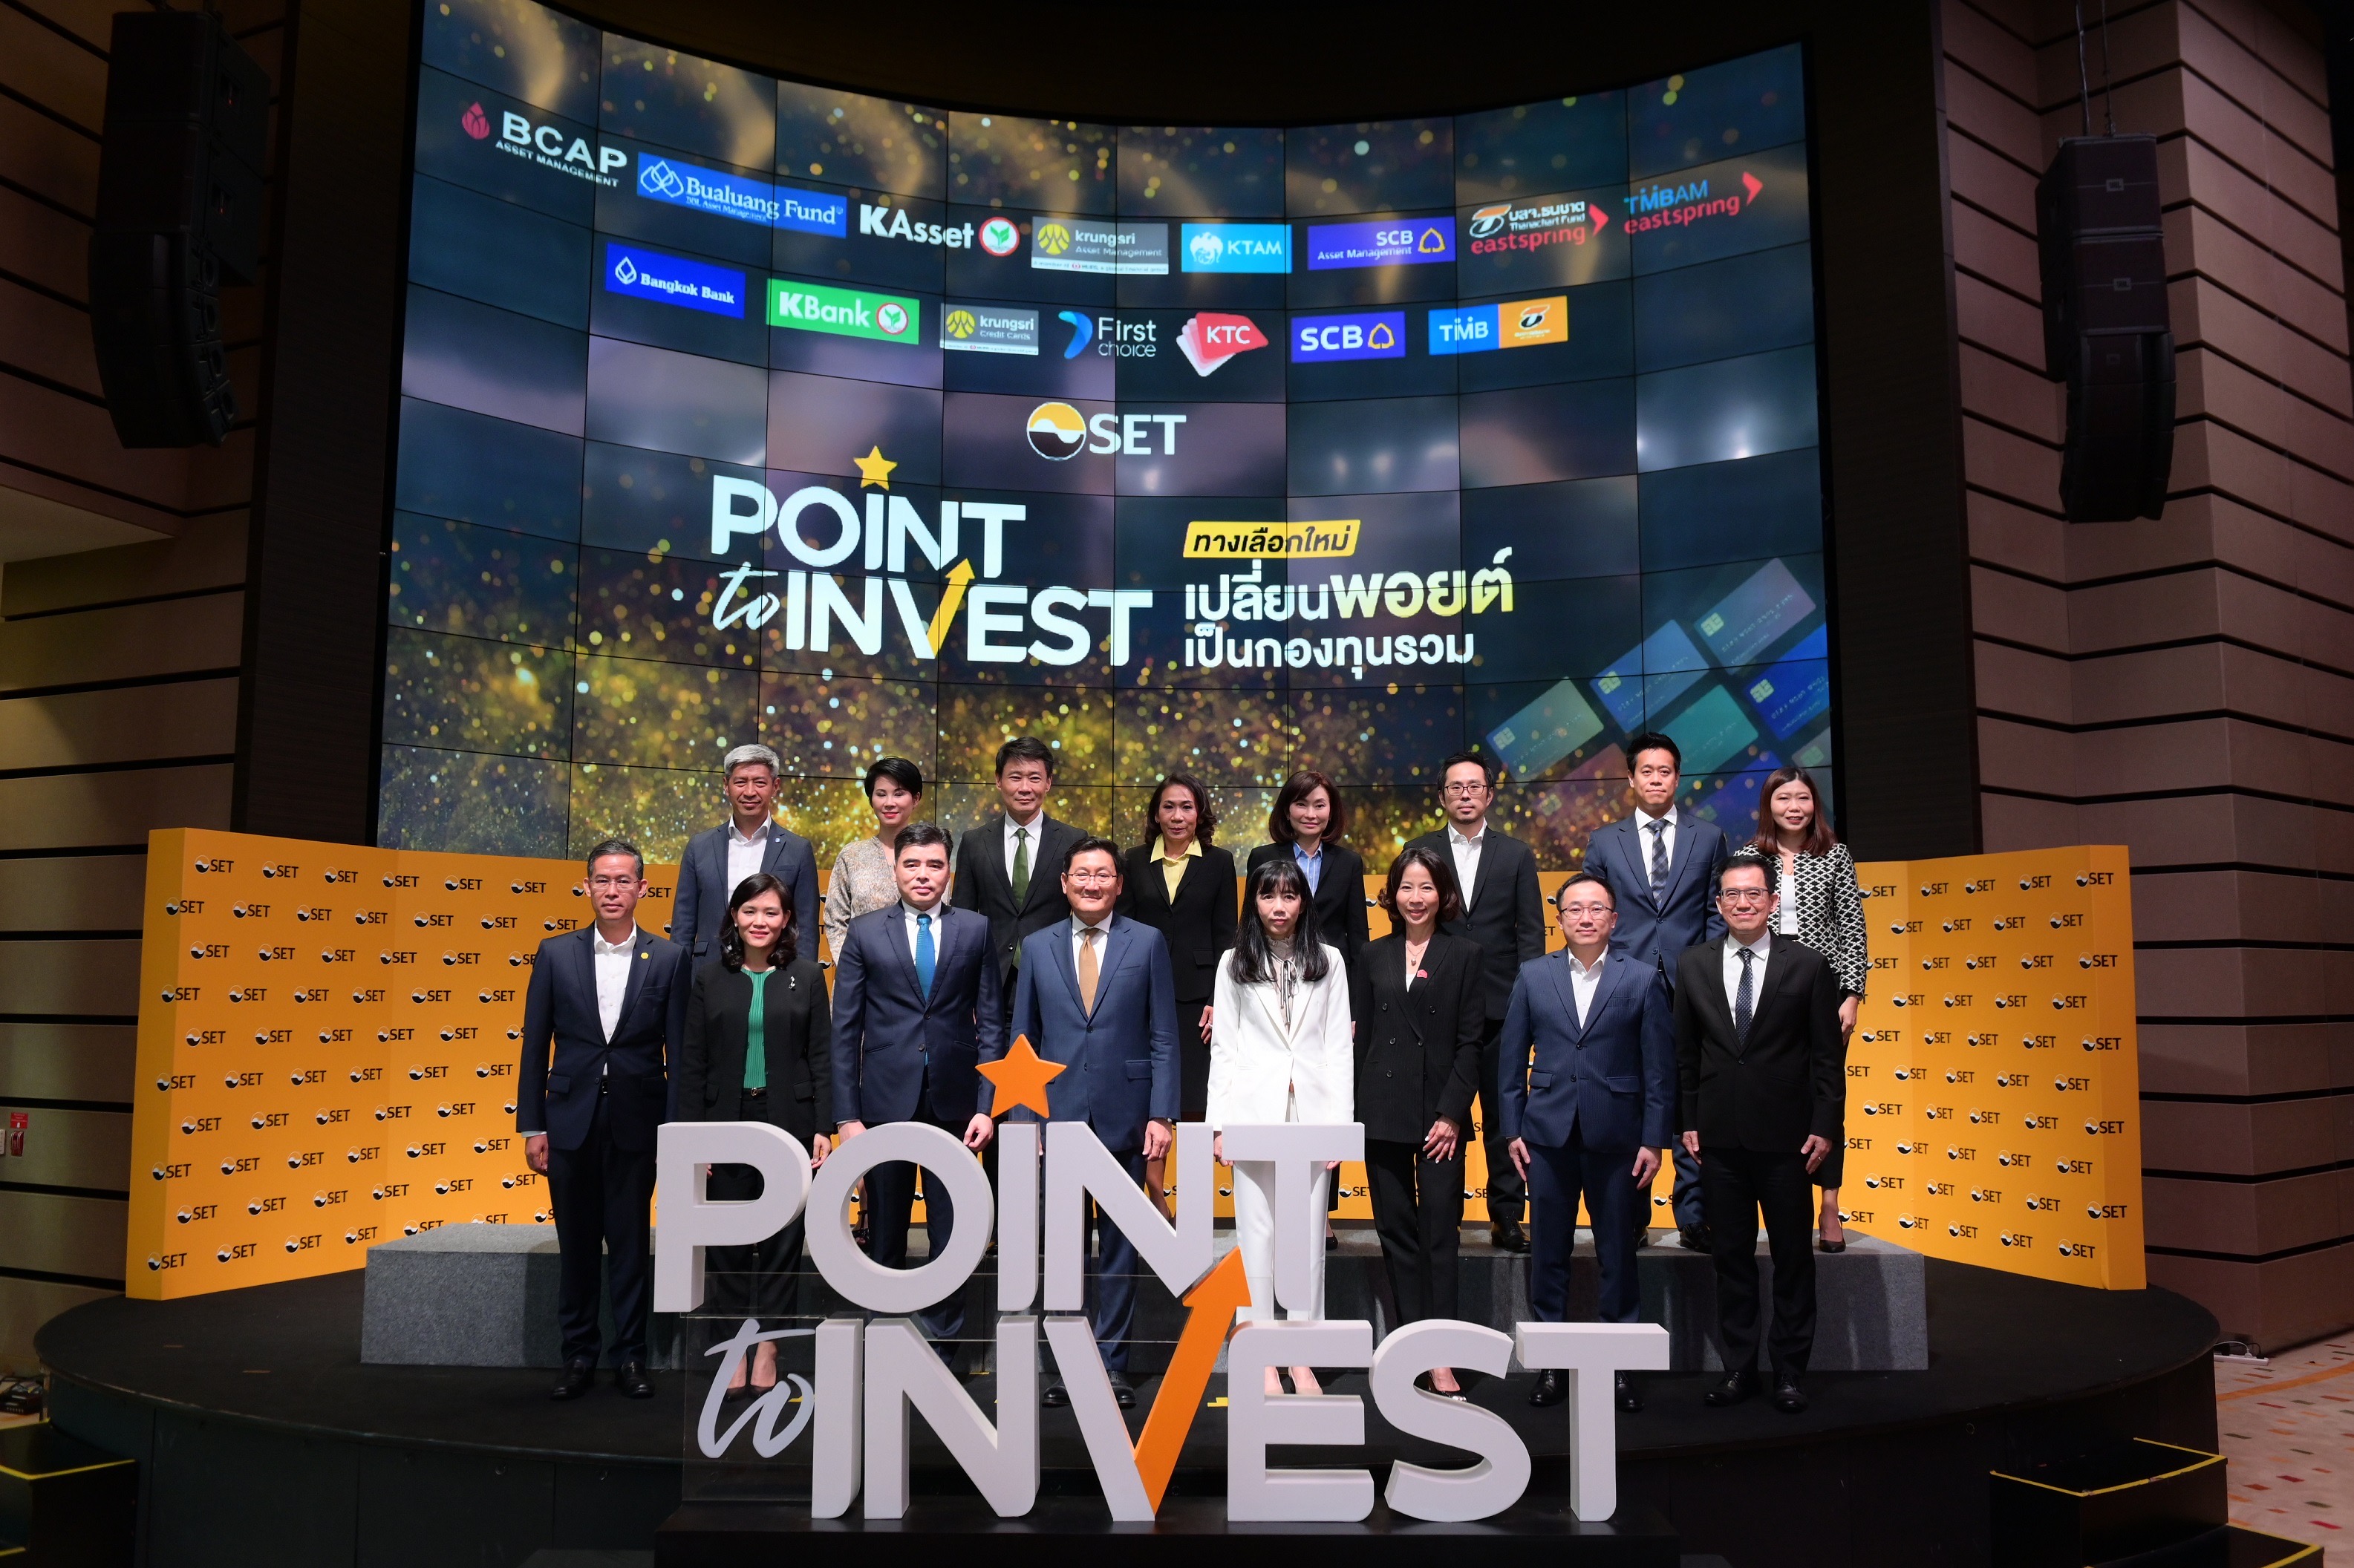 ตลาดหลักทรัพย์ฯ จับมือพันธมิตร เปิดโครงการ “Point to Invest” มิติใหม่เปลี่ยนพอยต์เป็นเงินลงทุน